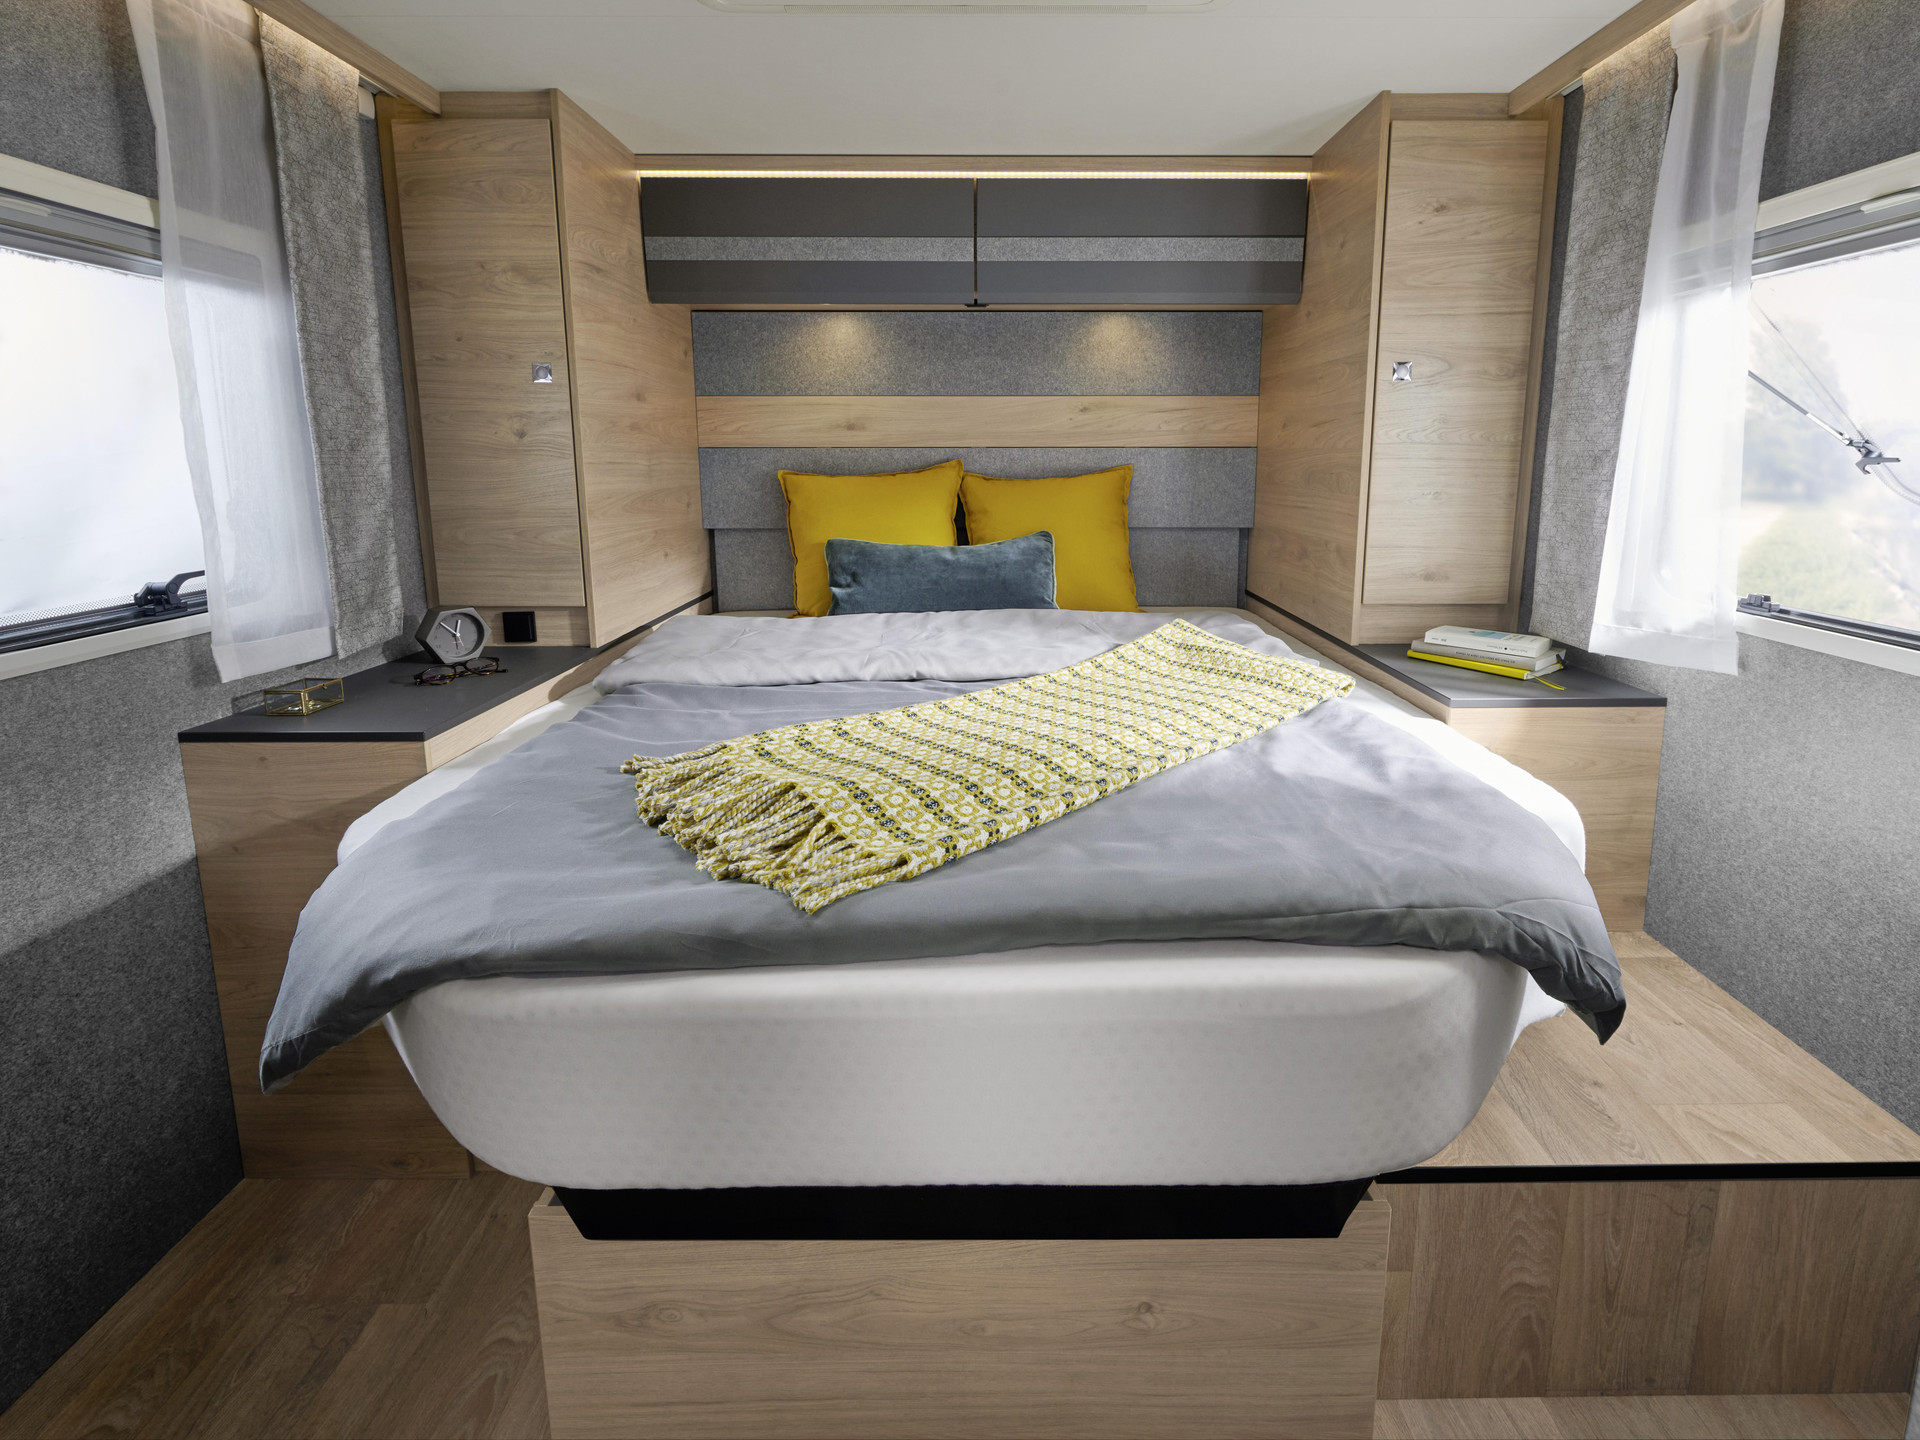 La cama Kingsize, de 190 × 150 cm, es regulable en altura de serie. ¿Más espacio en el garaje trasero o mejor más libertad de movimientos en el dormitorio? Usted decide según el equipaje que lleve.